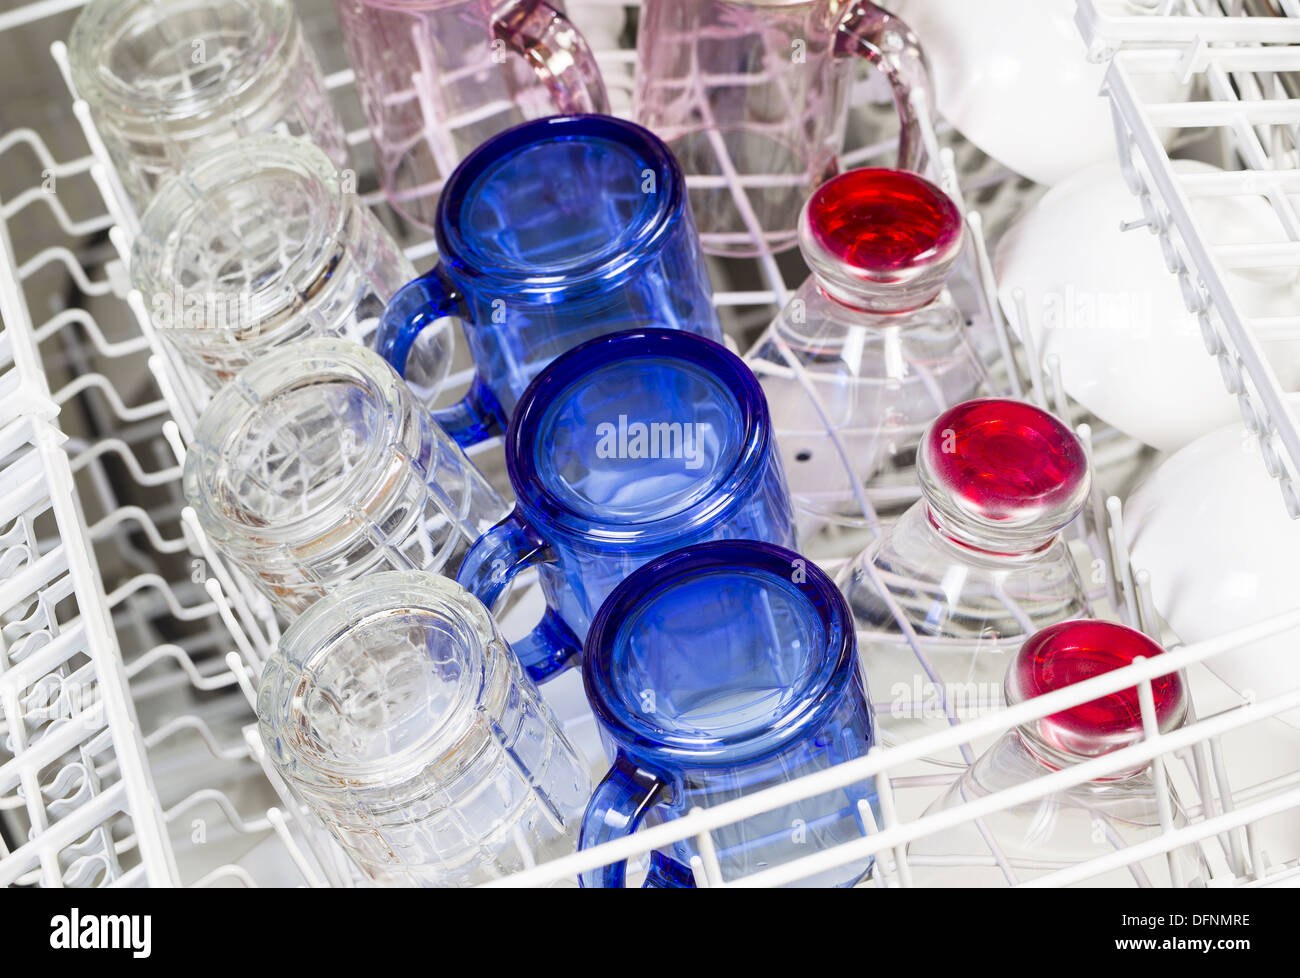 Photo horizontale de lave-vaisselle chargé avec bleu, rouge, rose clair et blanc lunettes avec verres Banque D'Images